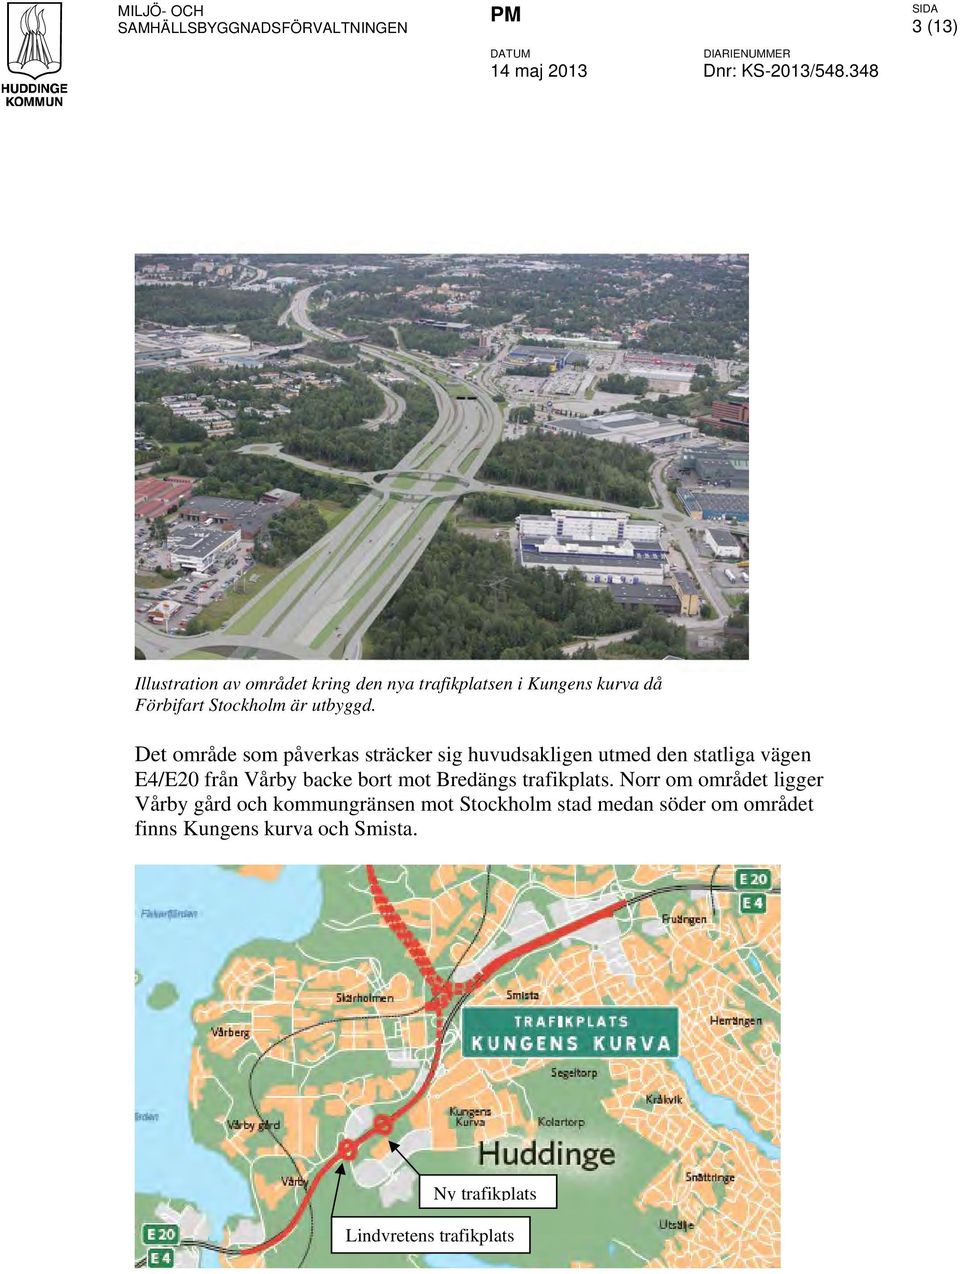 Det område som påverkas sträcker sig huvudsakligen utmed den statliga vägen E4/E20 från Vårby backe bort mot Bredängs